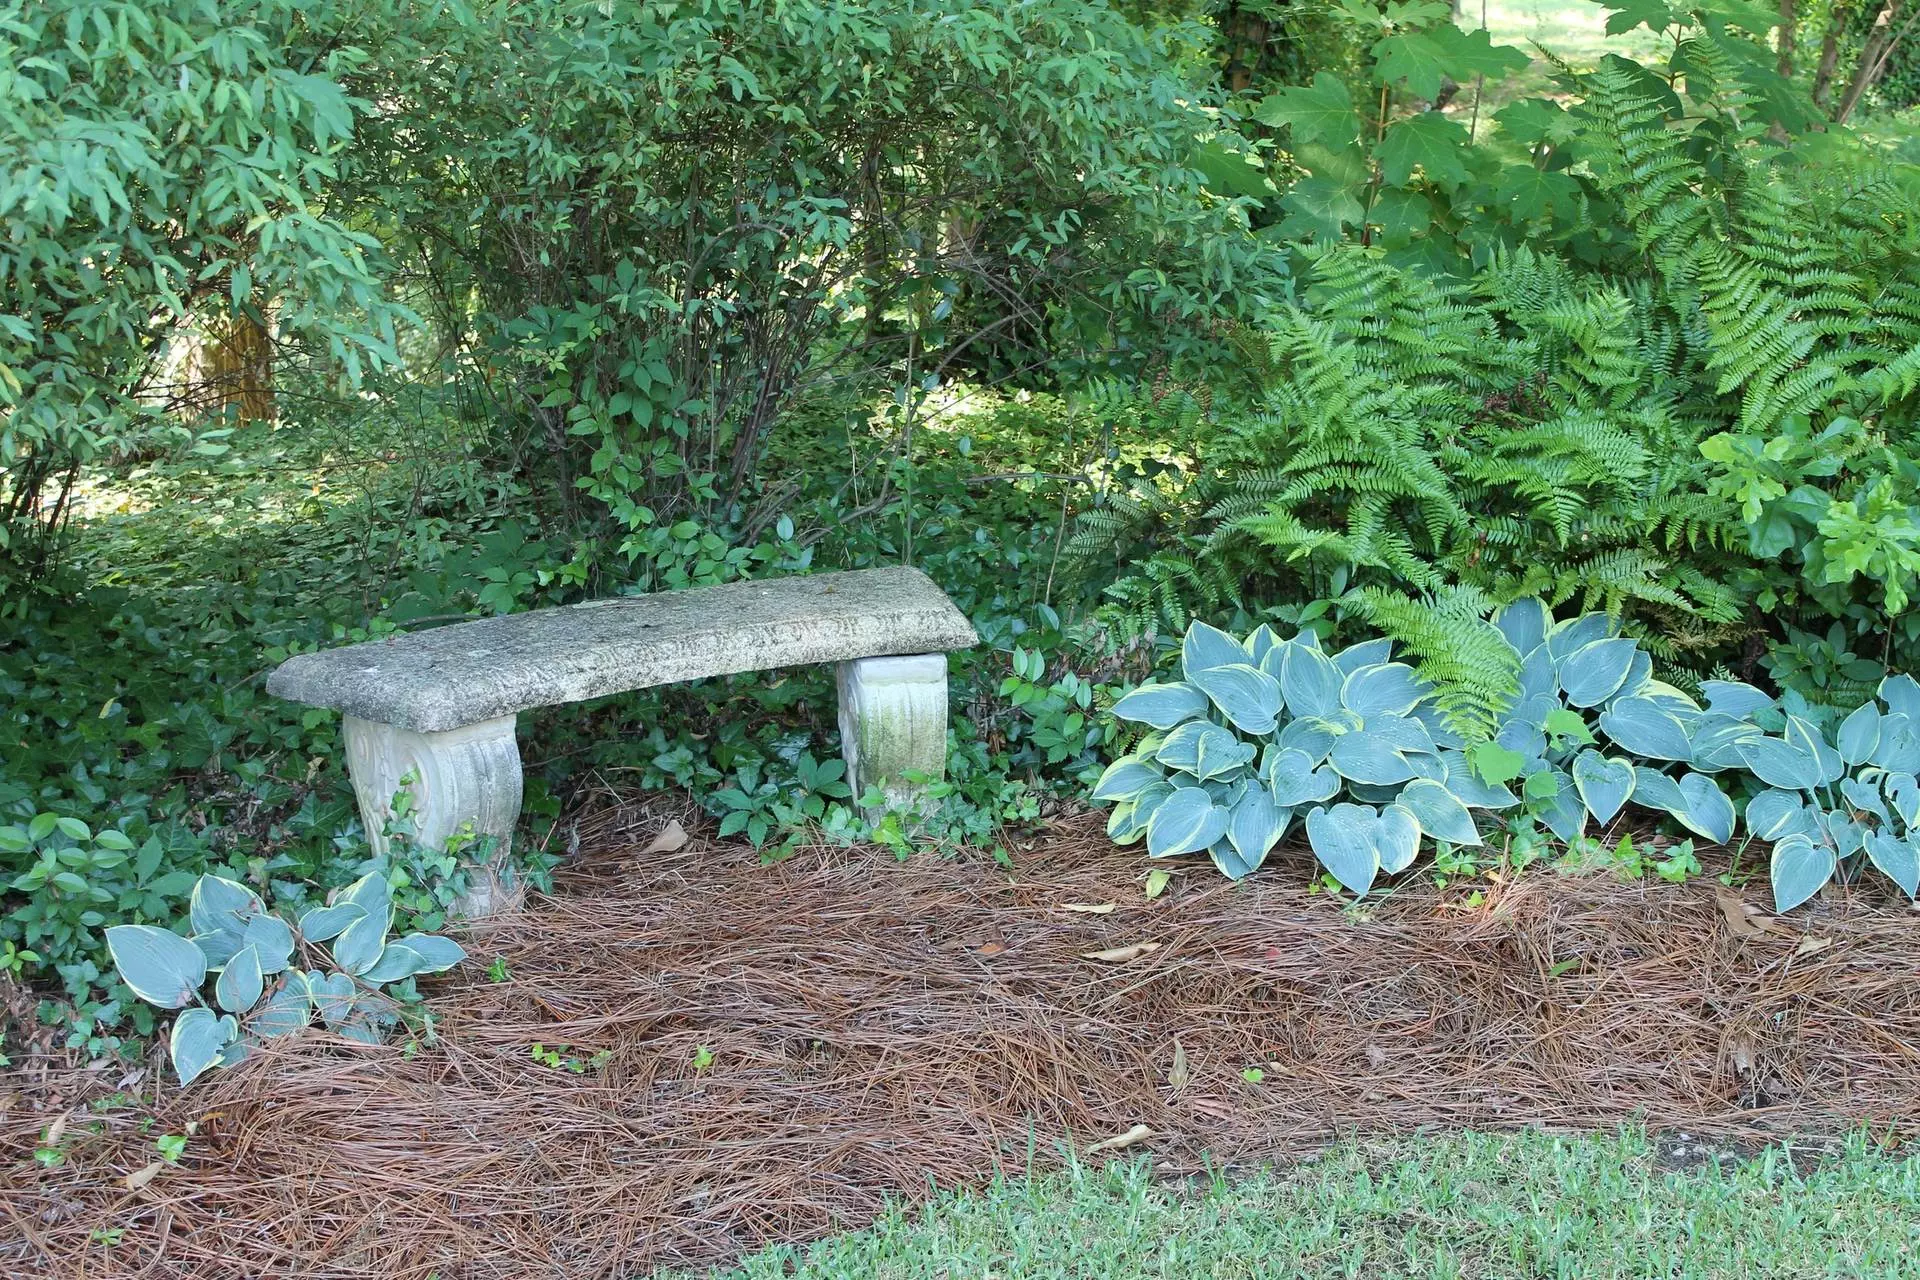 The Hall Wedding Garden bench